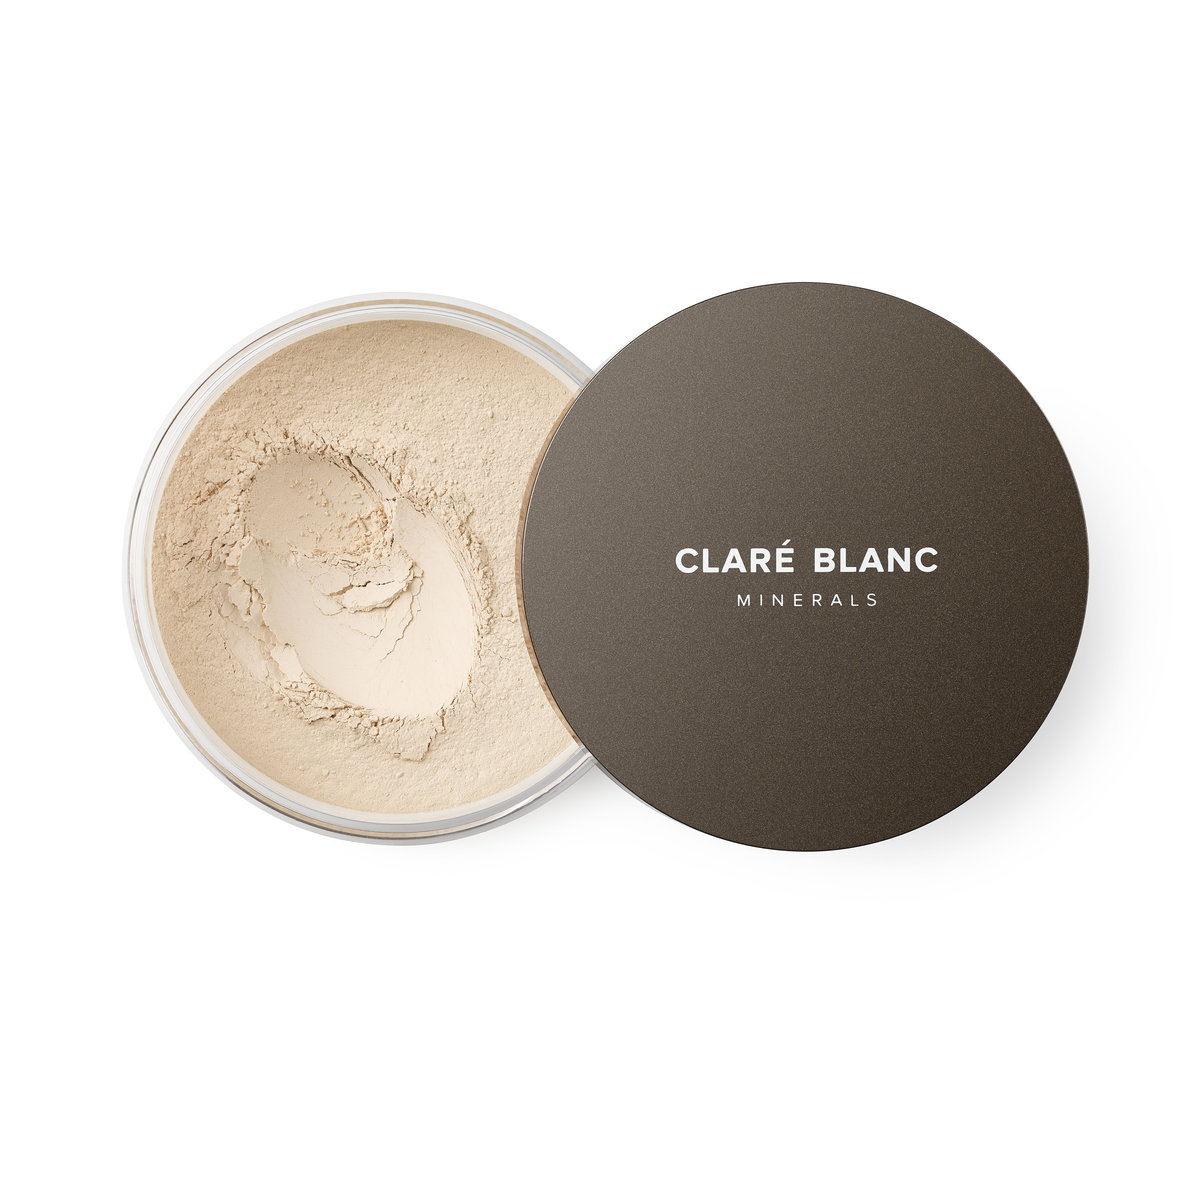 CLARE BLANC CLARÉ BLANC - SUPERBALANCED MINERAL FOUNDATION SPF15 - Mineralny podkład do twarzy SPF15 - 14g - 230 CLAPT14-1514-01